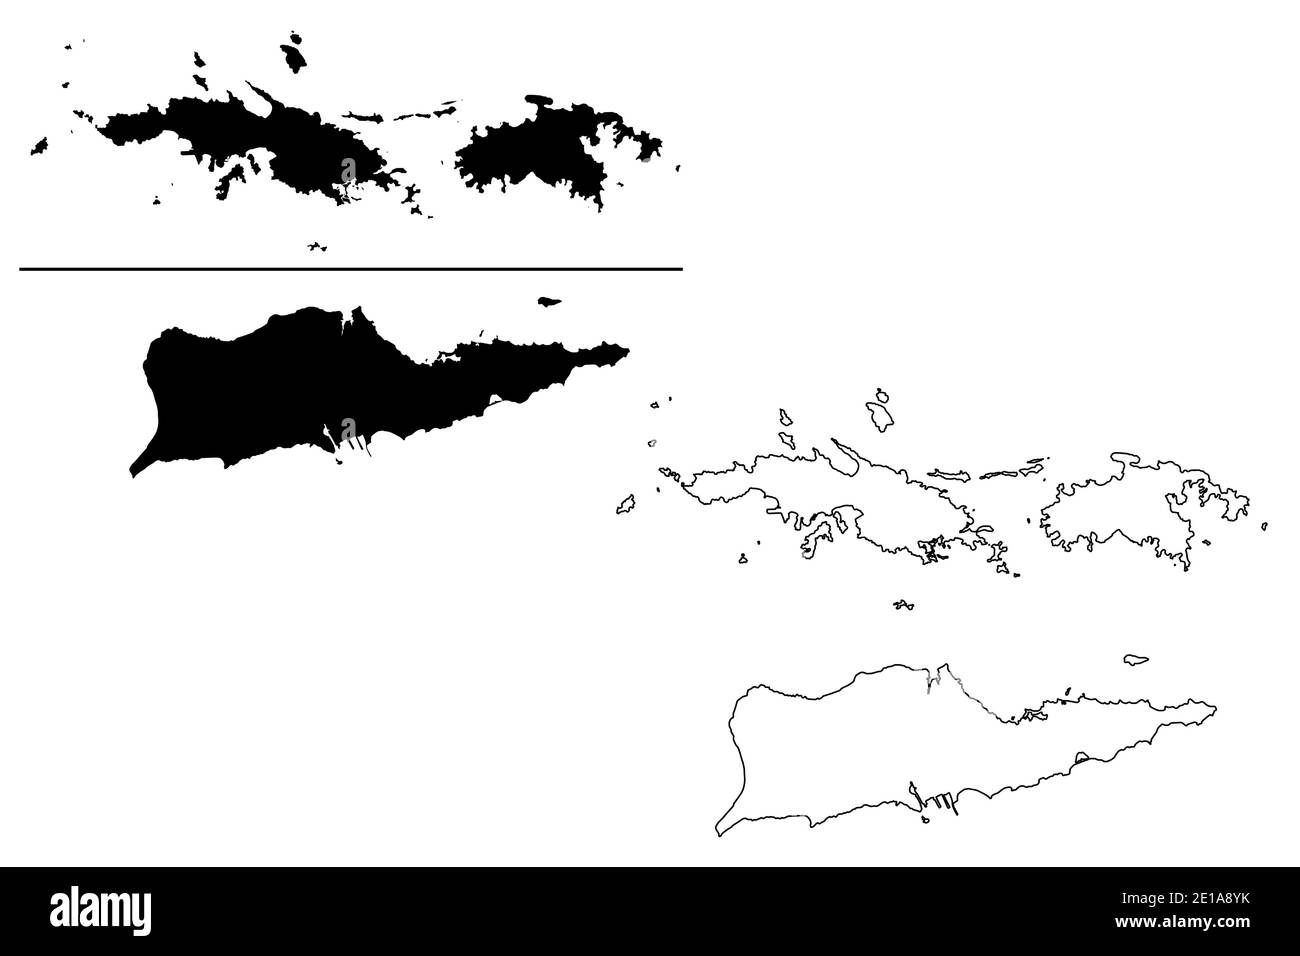 Jungferninseln der Vereinigten Staaten von Amerika (Vereinigte Staaten von Amerika, USA, US) Kartenvektordarstellung, scribble Skizze Vereinigte Staaten Jungferninseln Stock Vektor